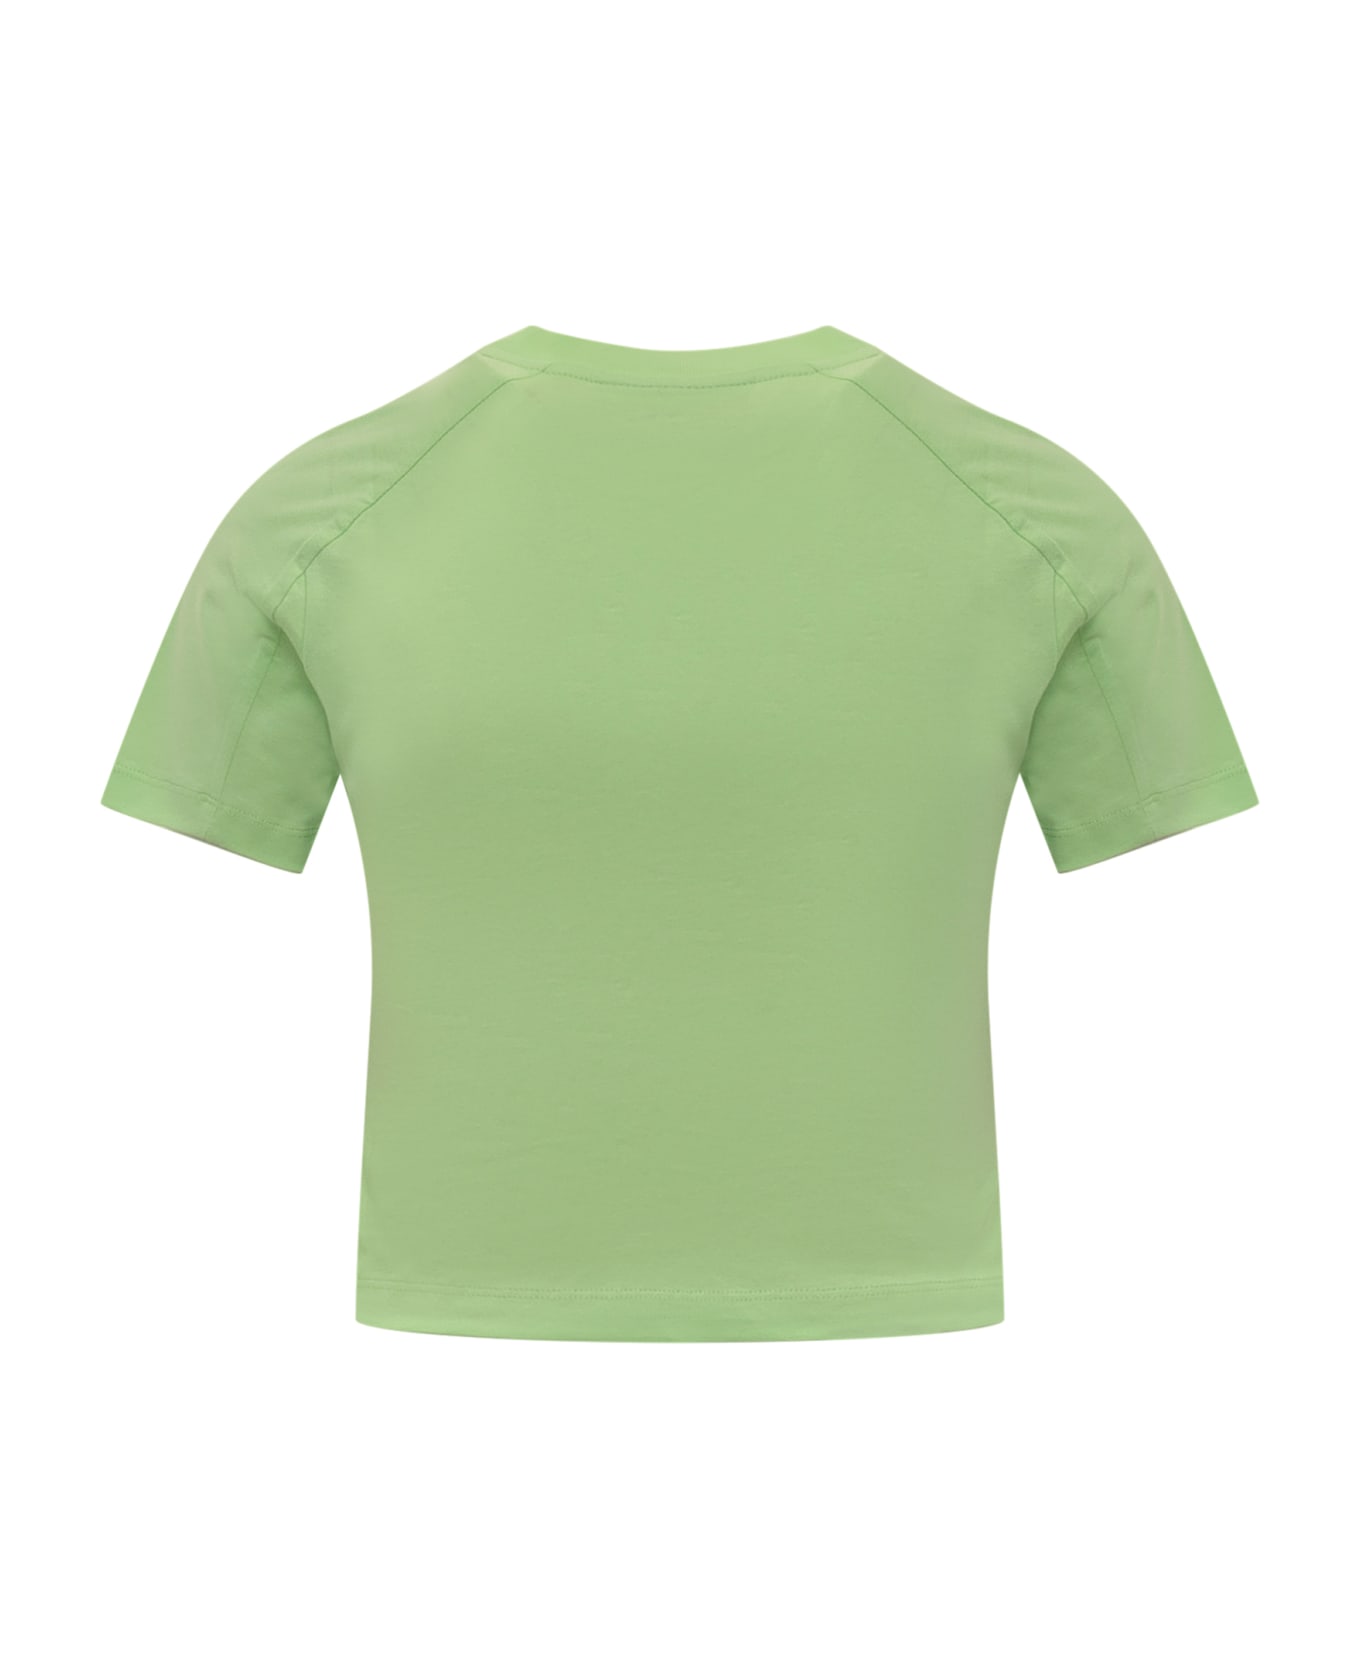 Chiara Ferragni Ferragni 602 T-shirt - Green Tシャツ